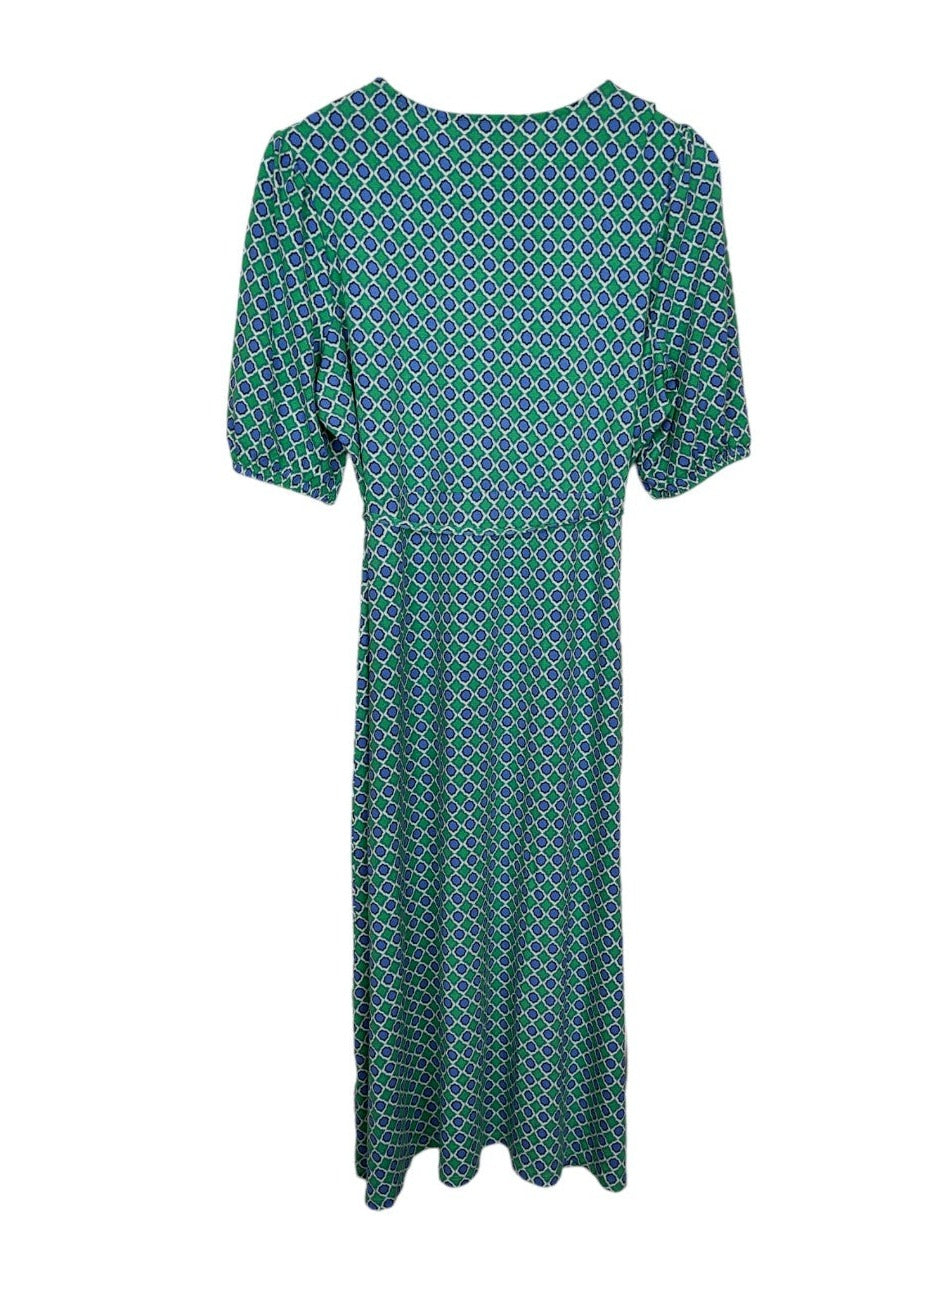 Εμπριμέ, Maxi Φόρεμα από Βισκόζη M&S σε Πράσινο-Σιέλ χρώμα (Medium)